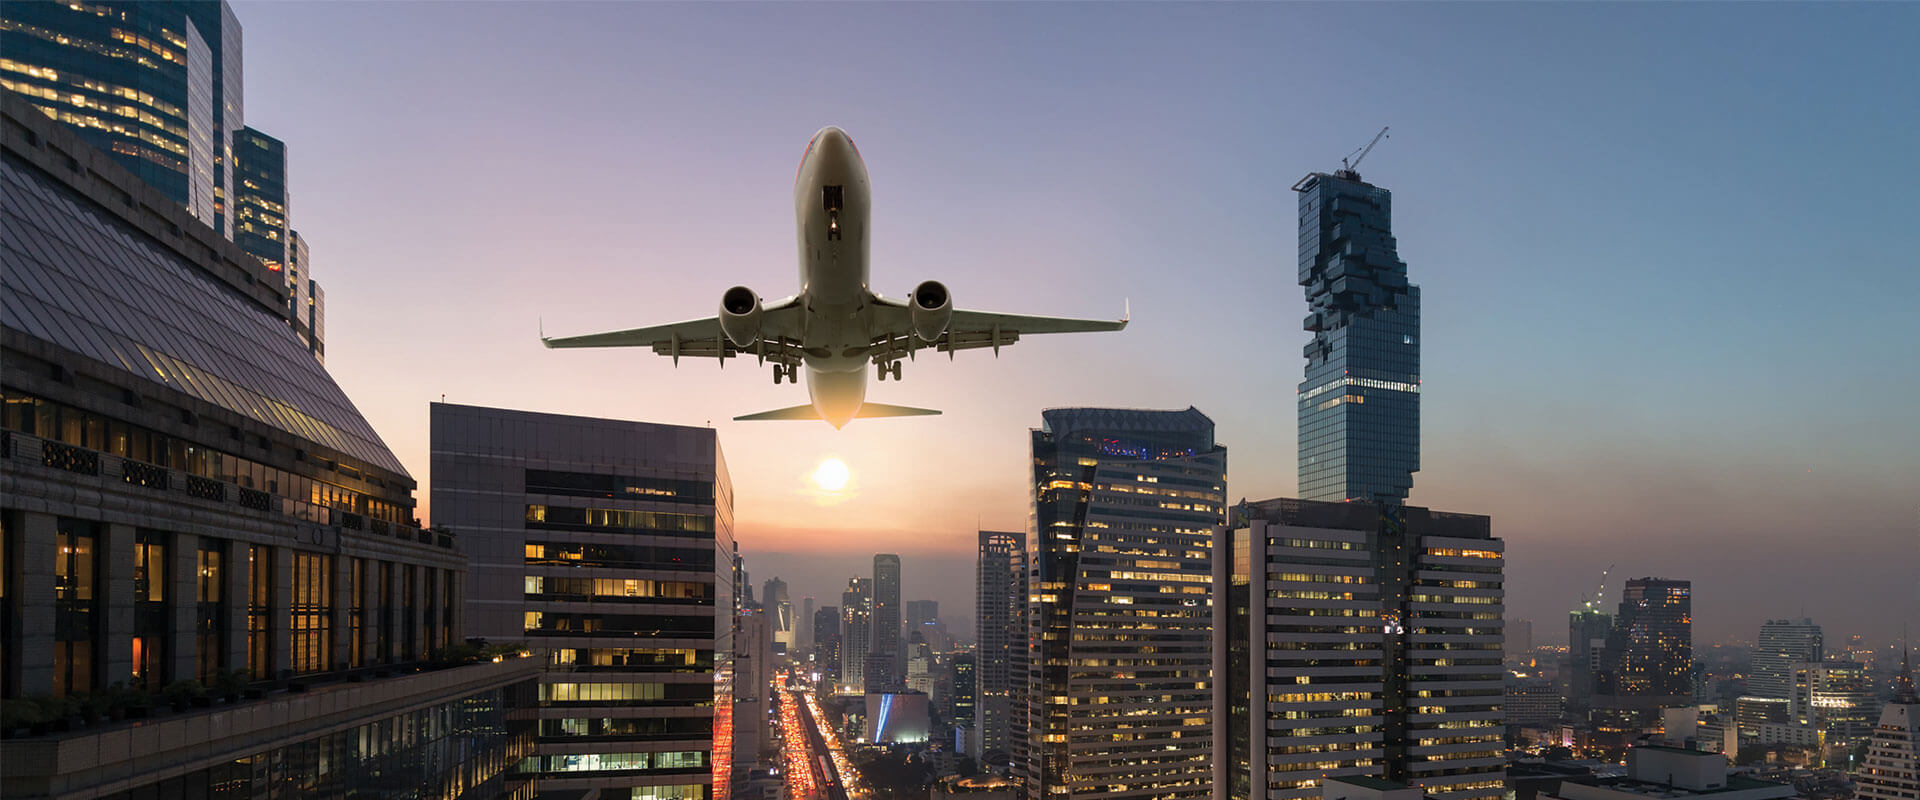 Valor da engenharia: suporte às companhias aéreas para um retorno seguro ao serviço